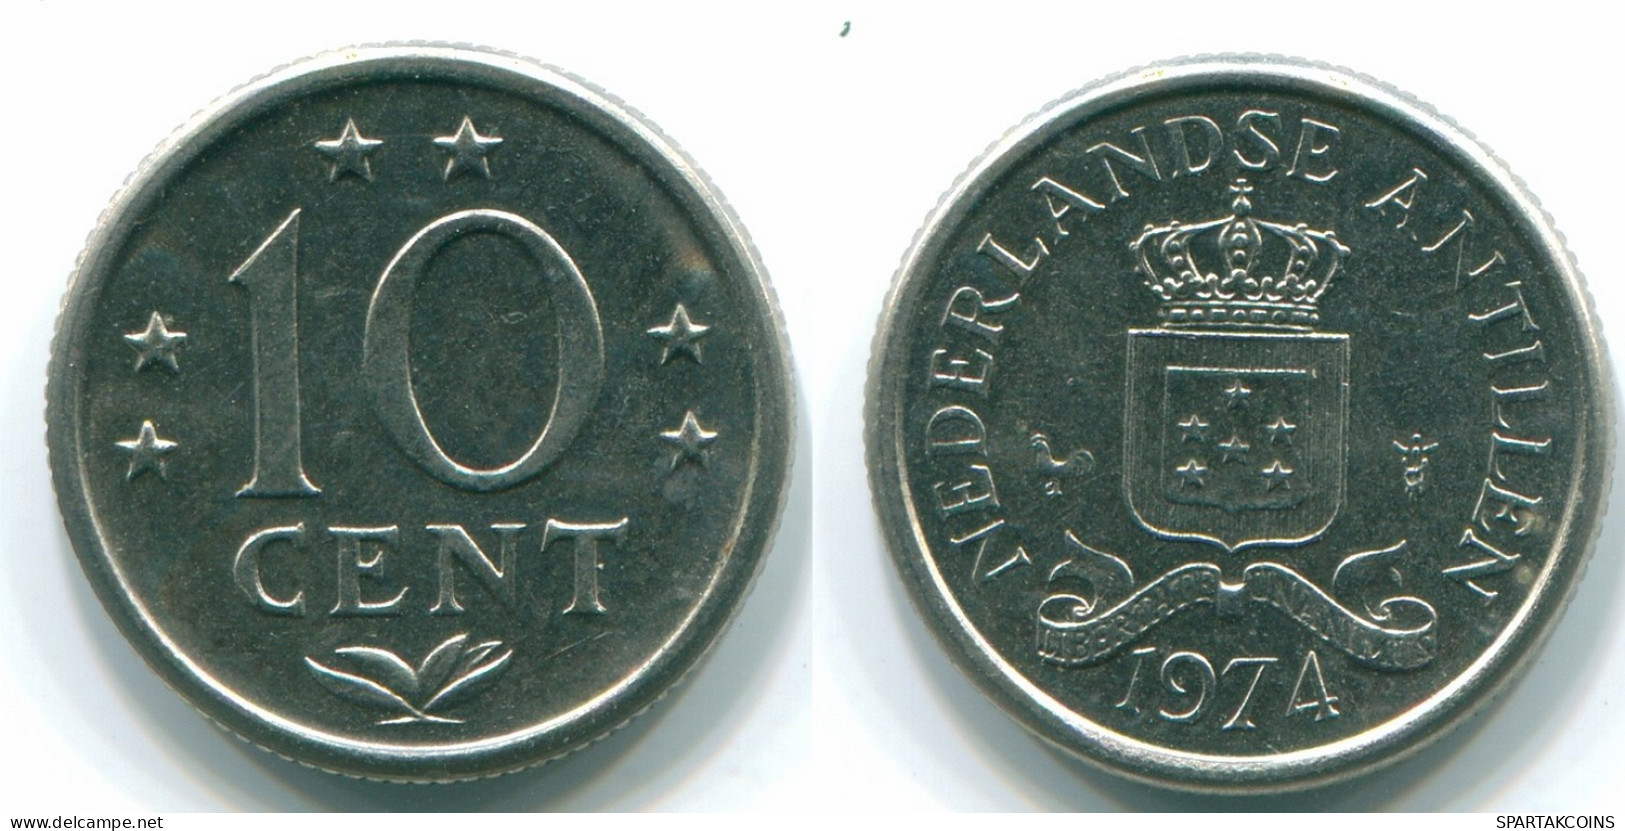 10 CENTS 1974 ANTILLES NÉERLANDAISES Nickel Colonial Pièce #S13500.F.A - Netherlands Antilles